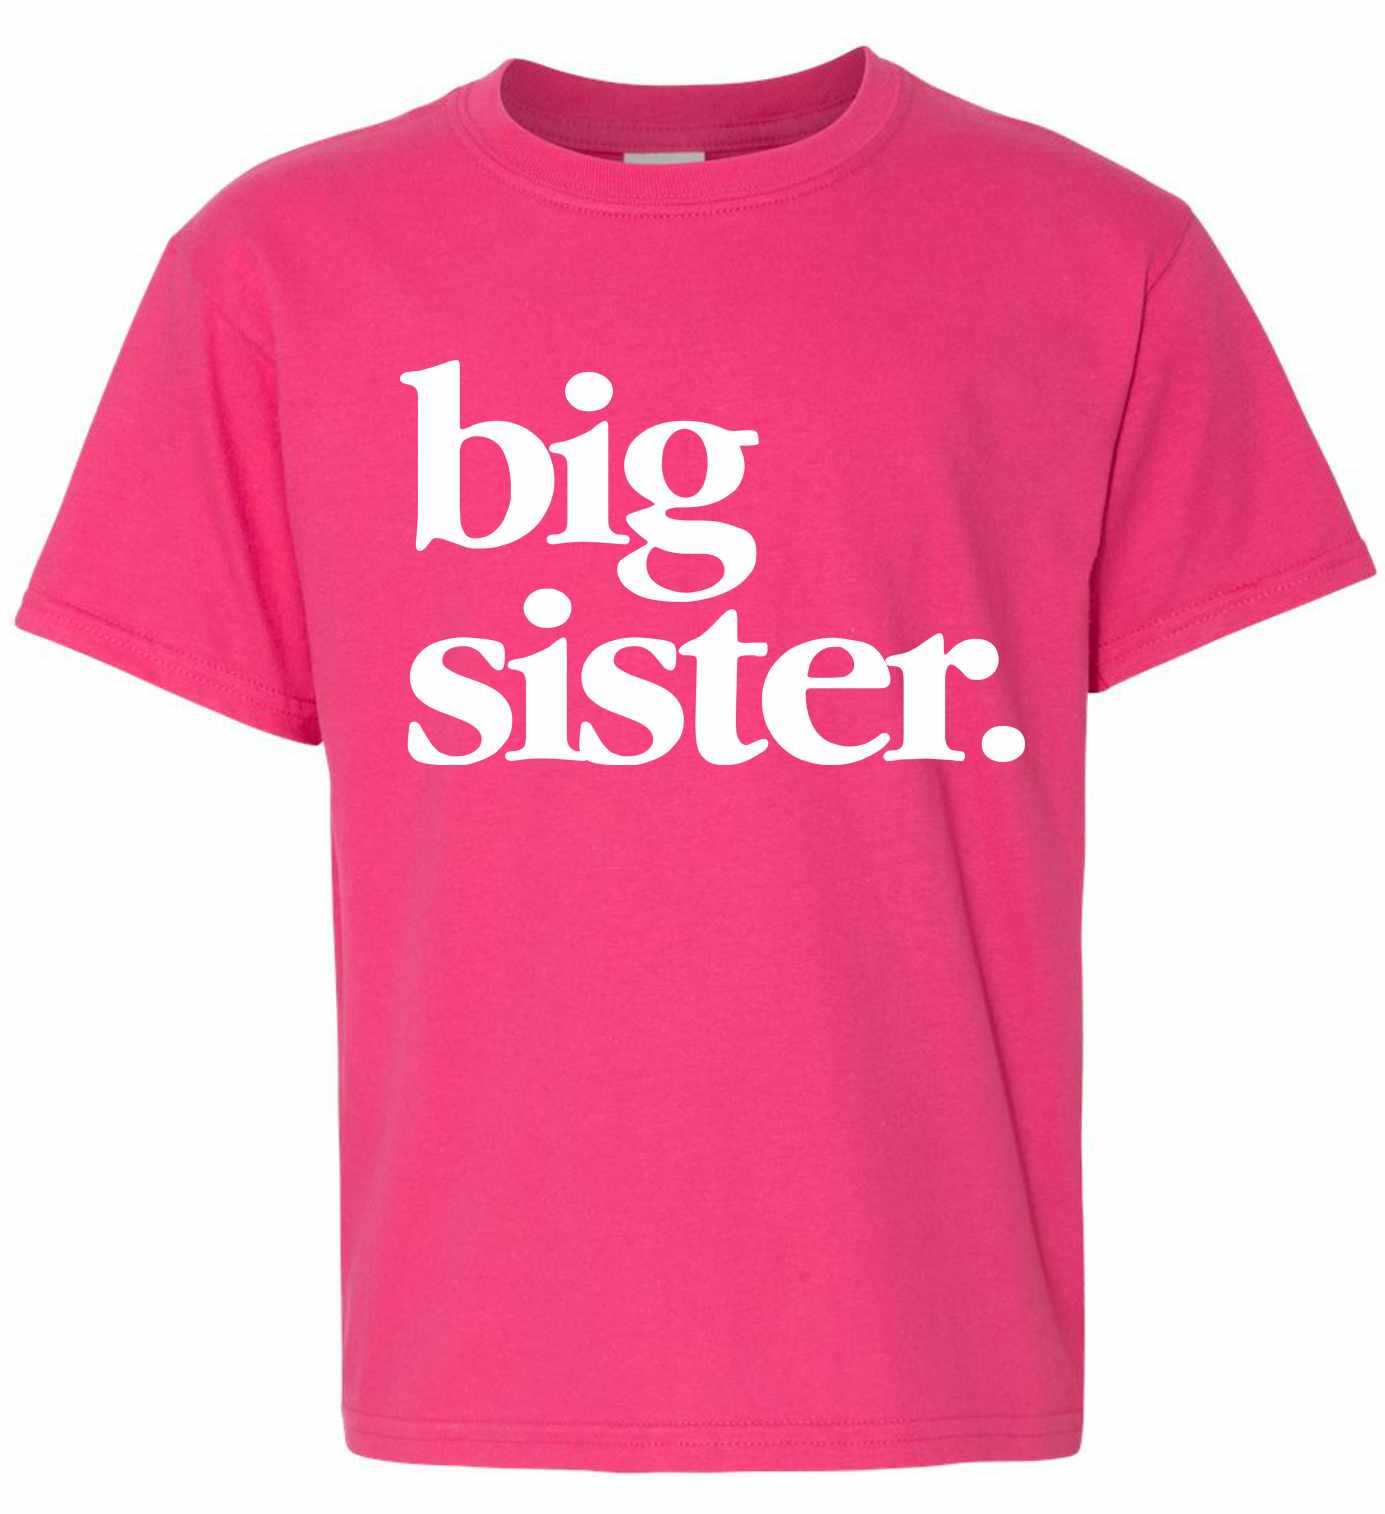 Big Sister on Kids T-Shirt (#1319-201)